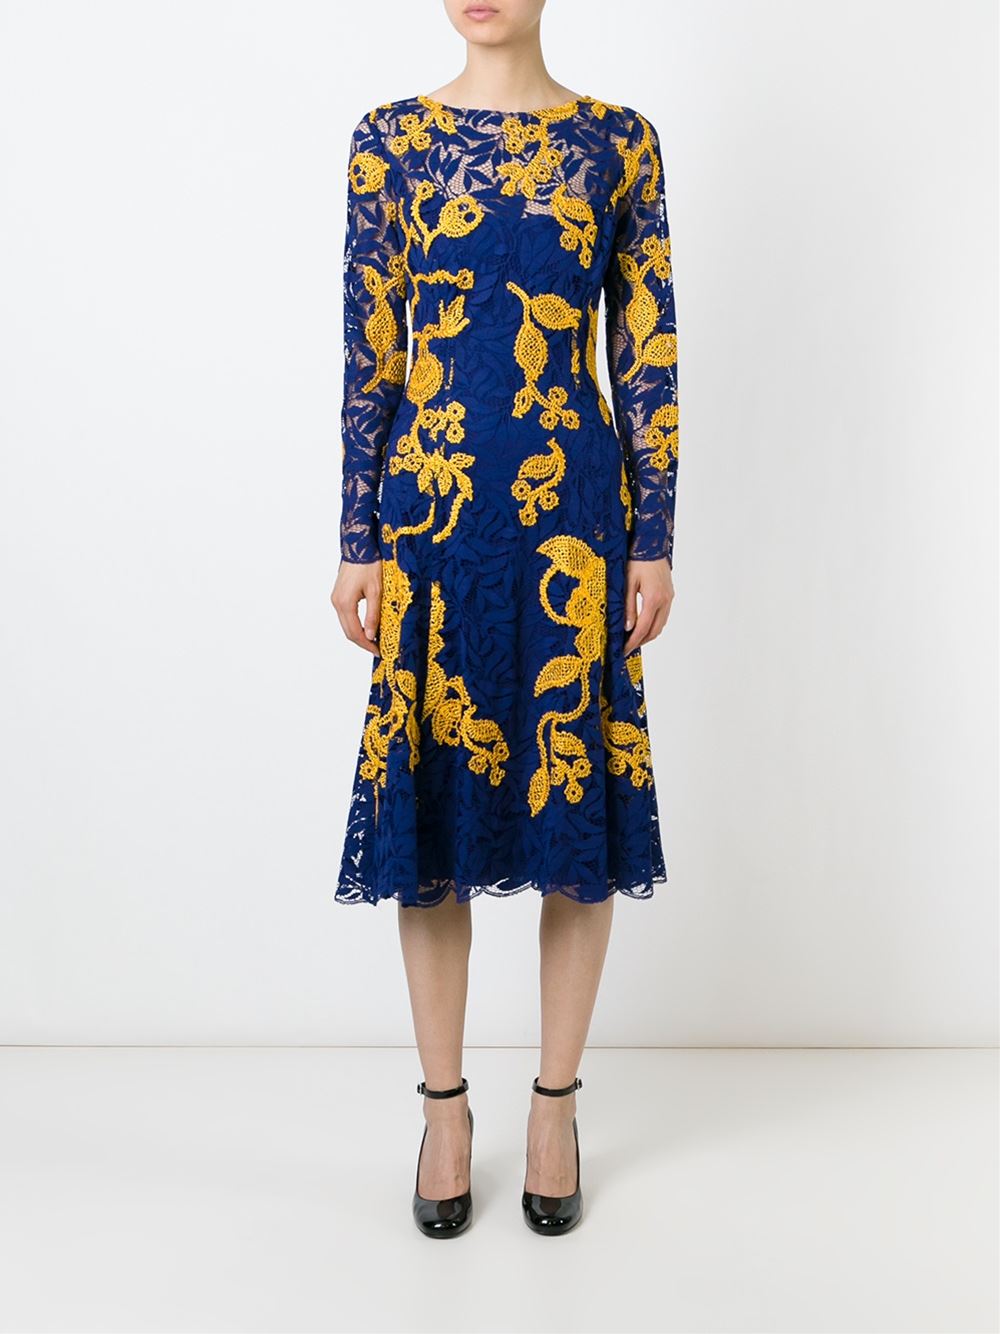 OSCAR DE LA RENTA-Fern Lace Dress-